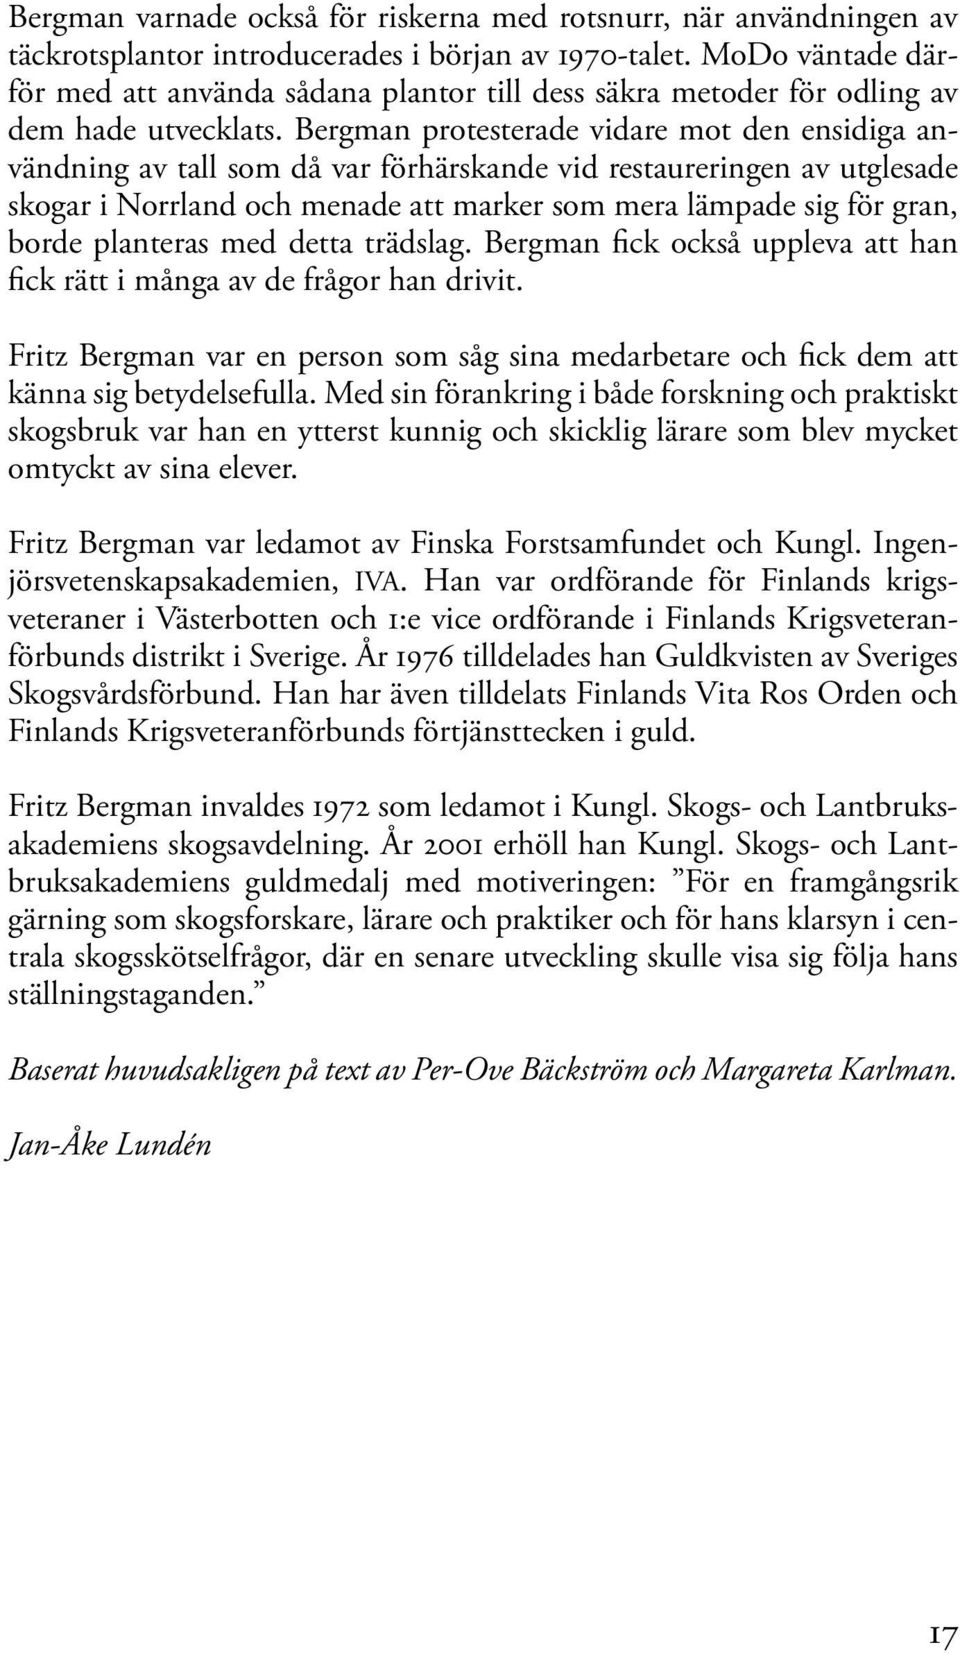 Bergman protesterade vidare mot den ensidiga användning av tall som då var förhärskande vid restaureringen av utglesade skogar i Norrland och menade att marker som mera lämpade sig för gran, borde